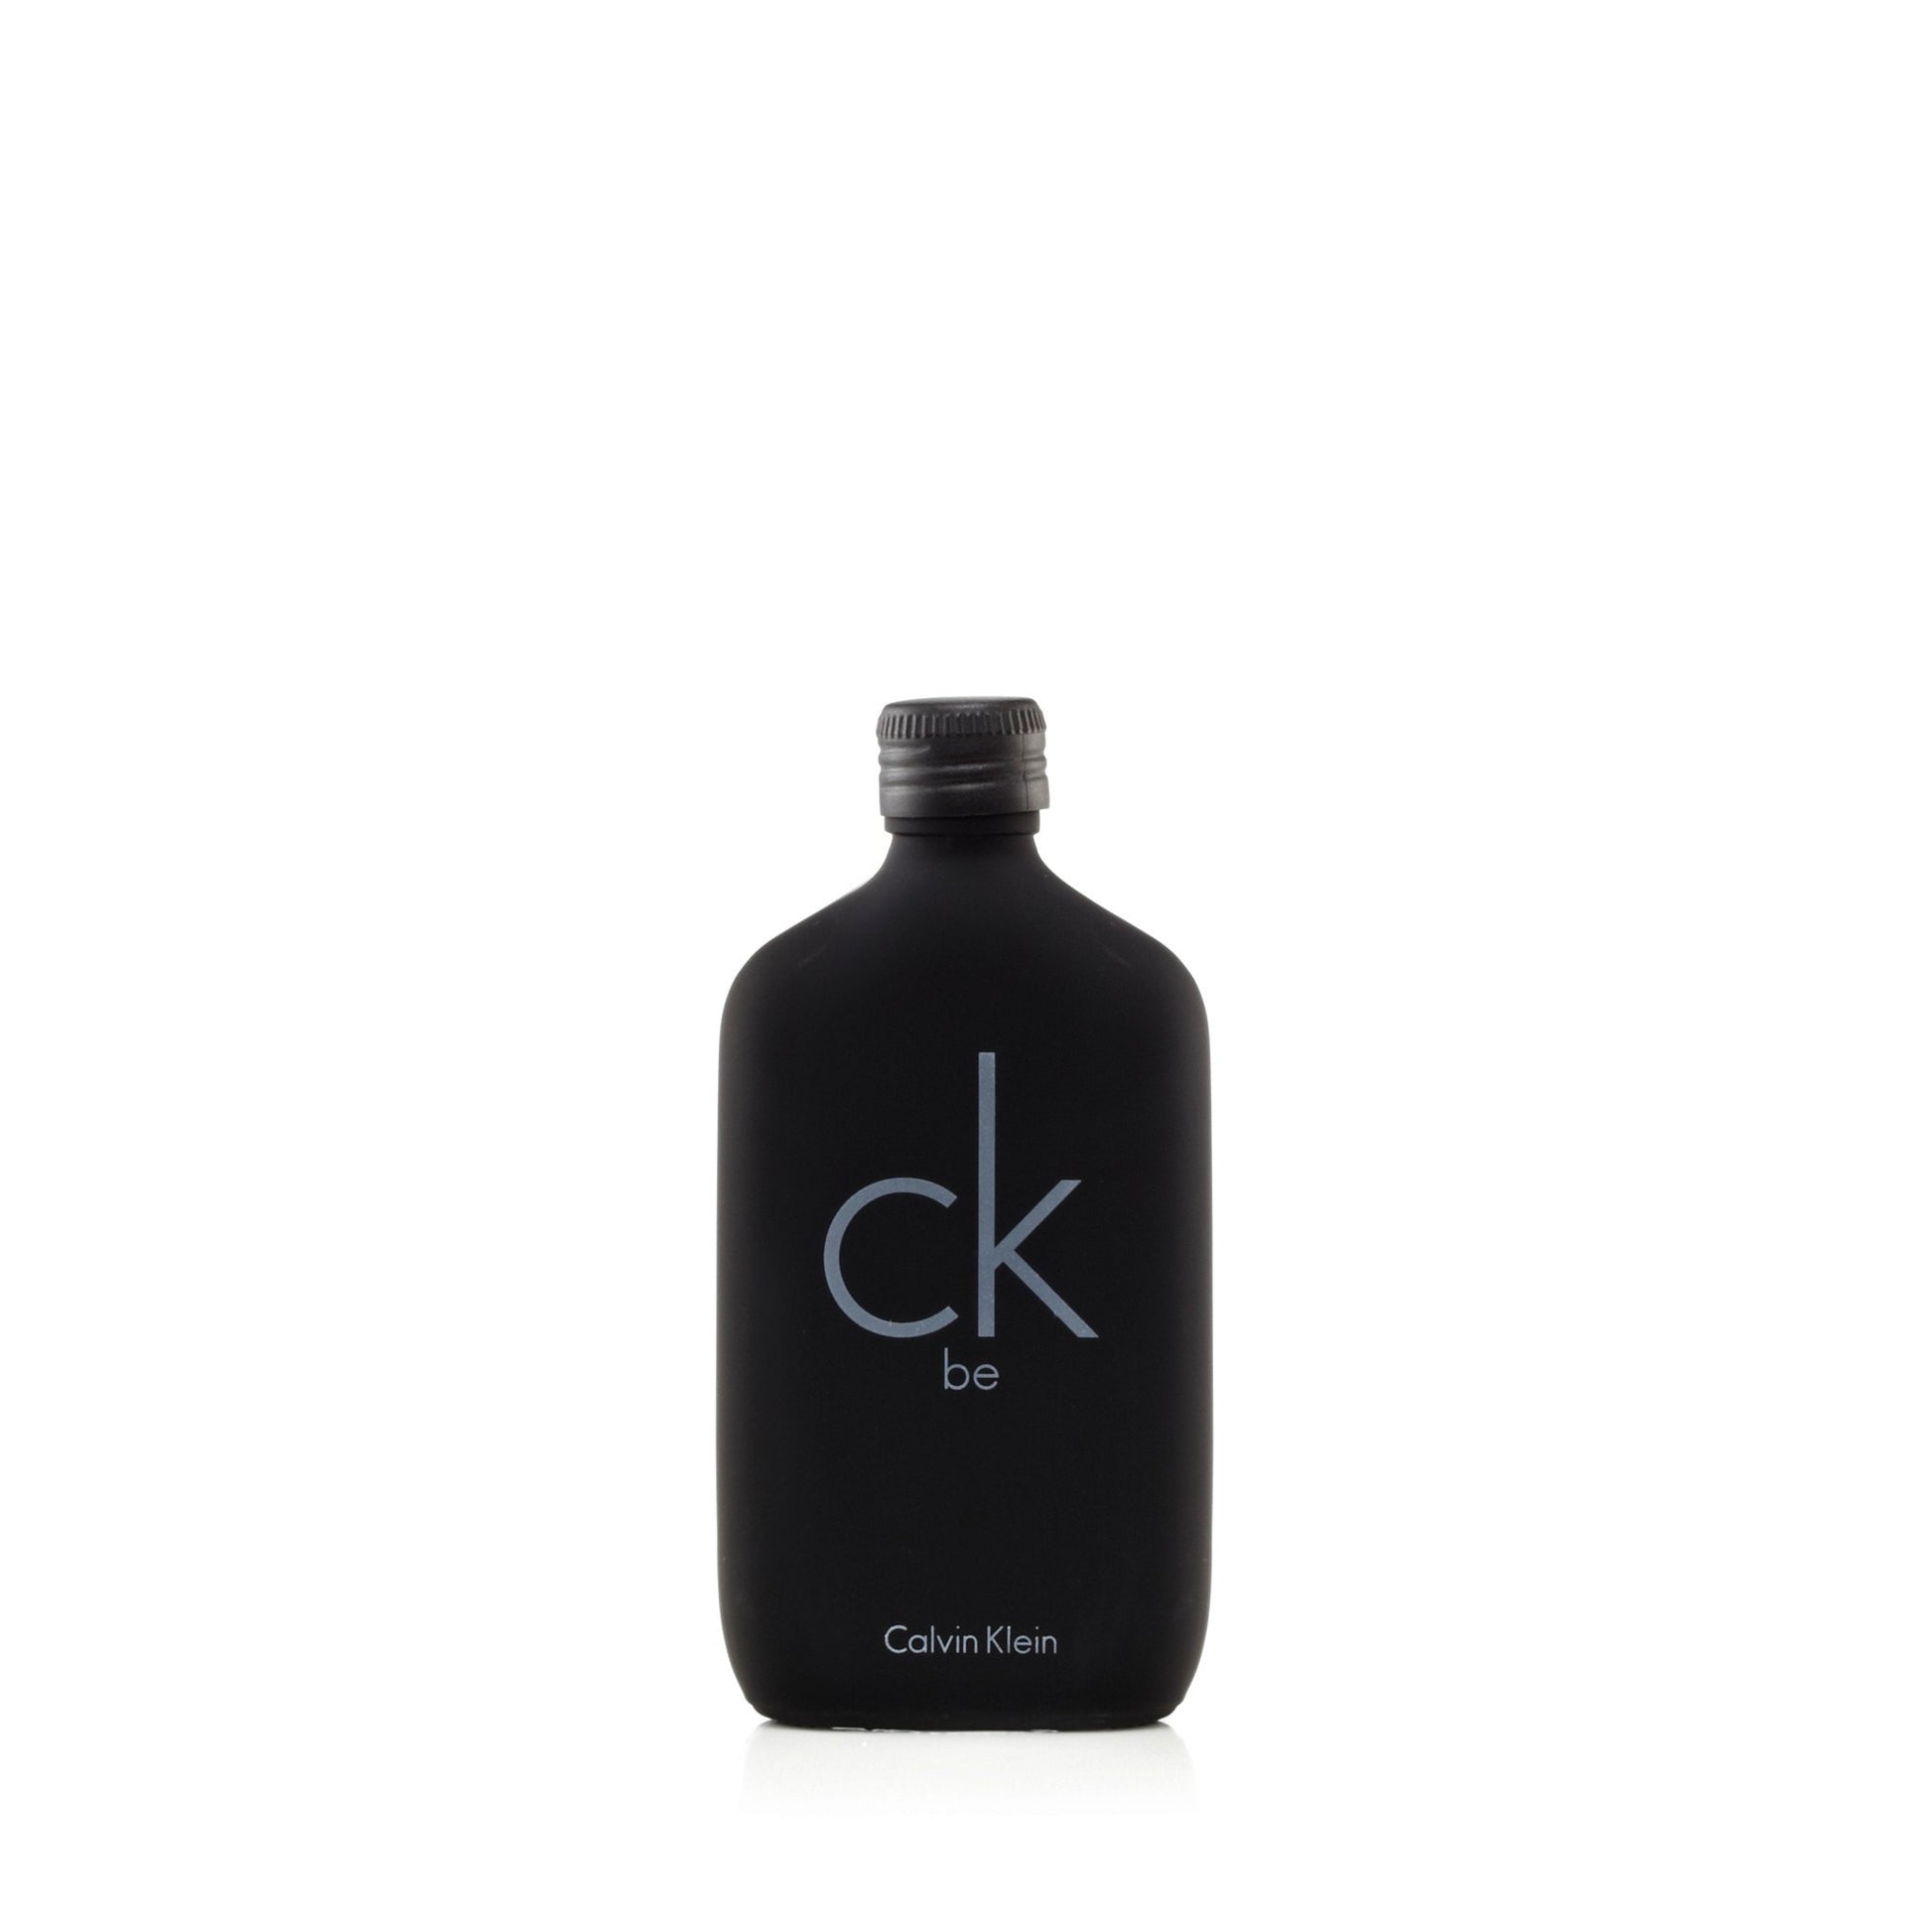 Be Eau de Toilette Spray for Men by Calvin Klein 1.7 oz. Click to open in modal